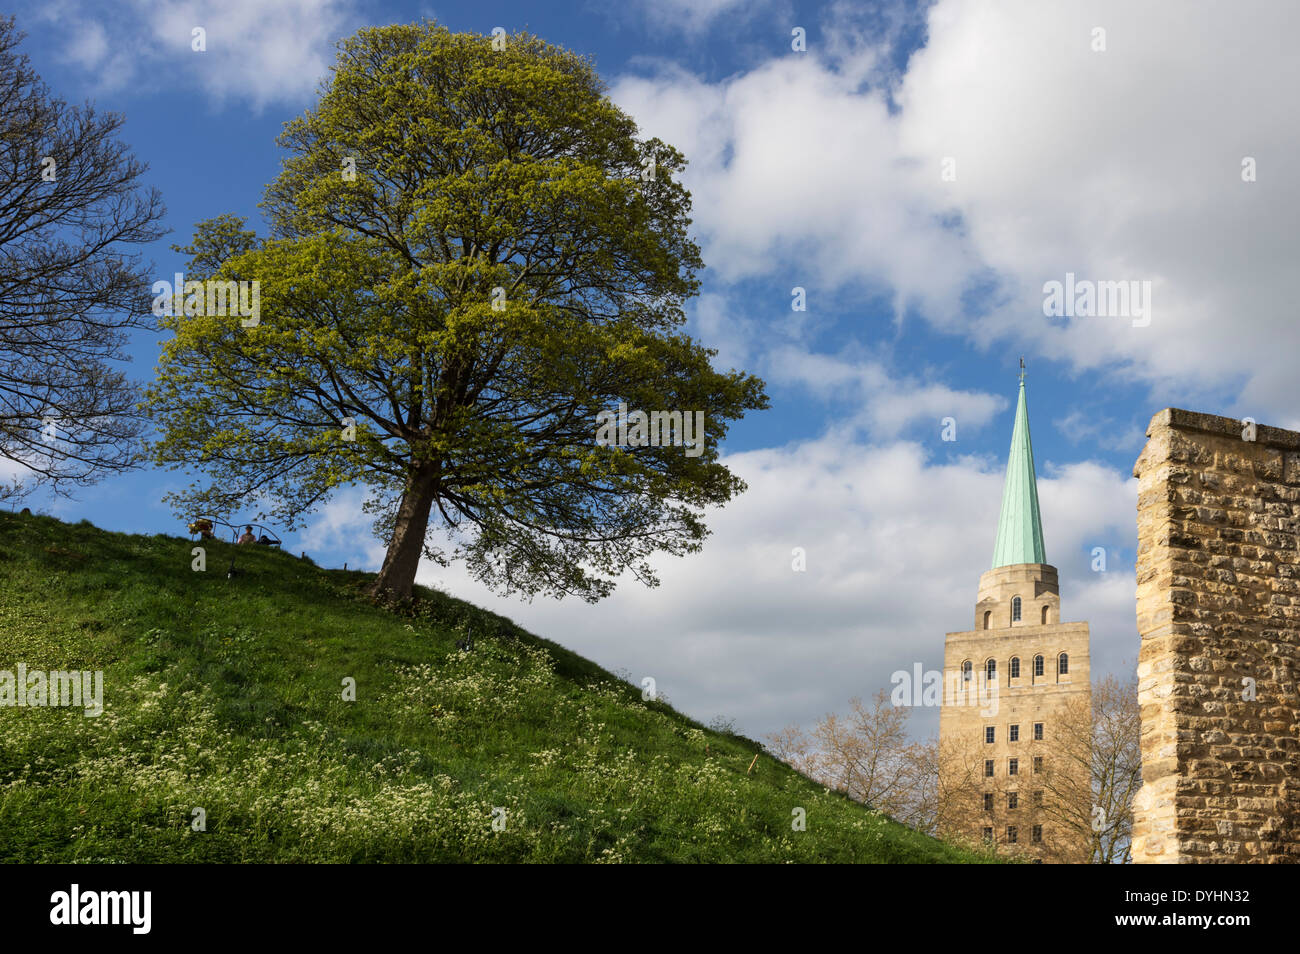 Die Schloss-Hügel im Stadtzentrum von Oxford mit dem Turm des Nuffield College im Hintergrund Stockfoto